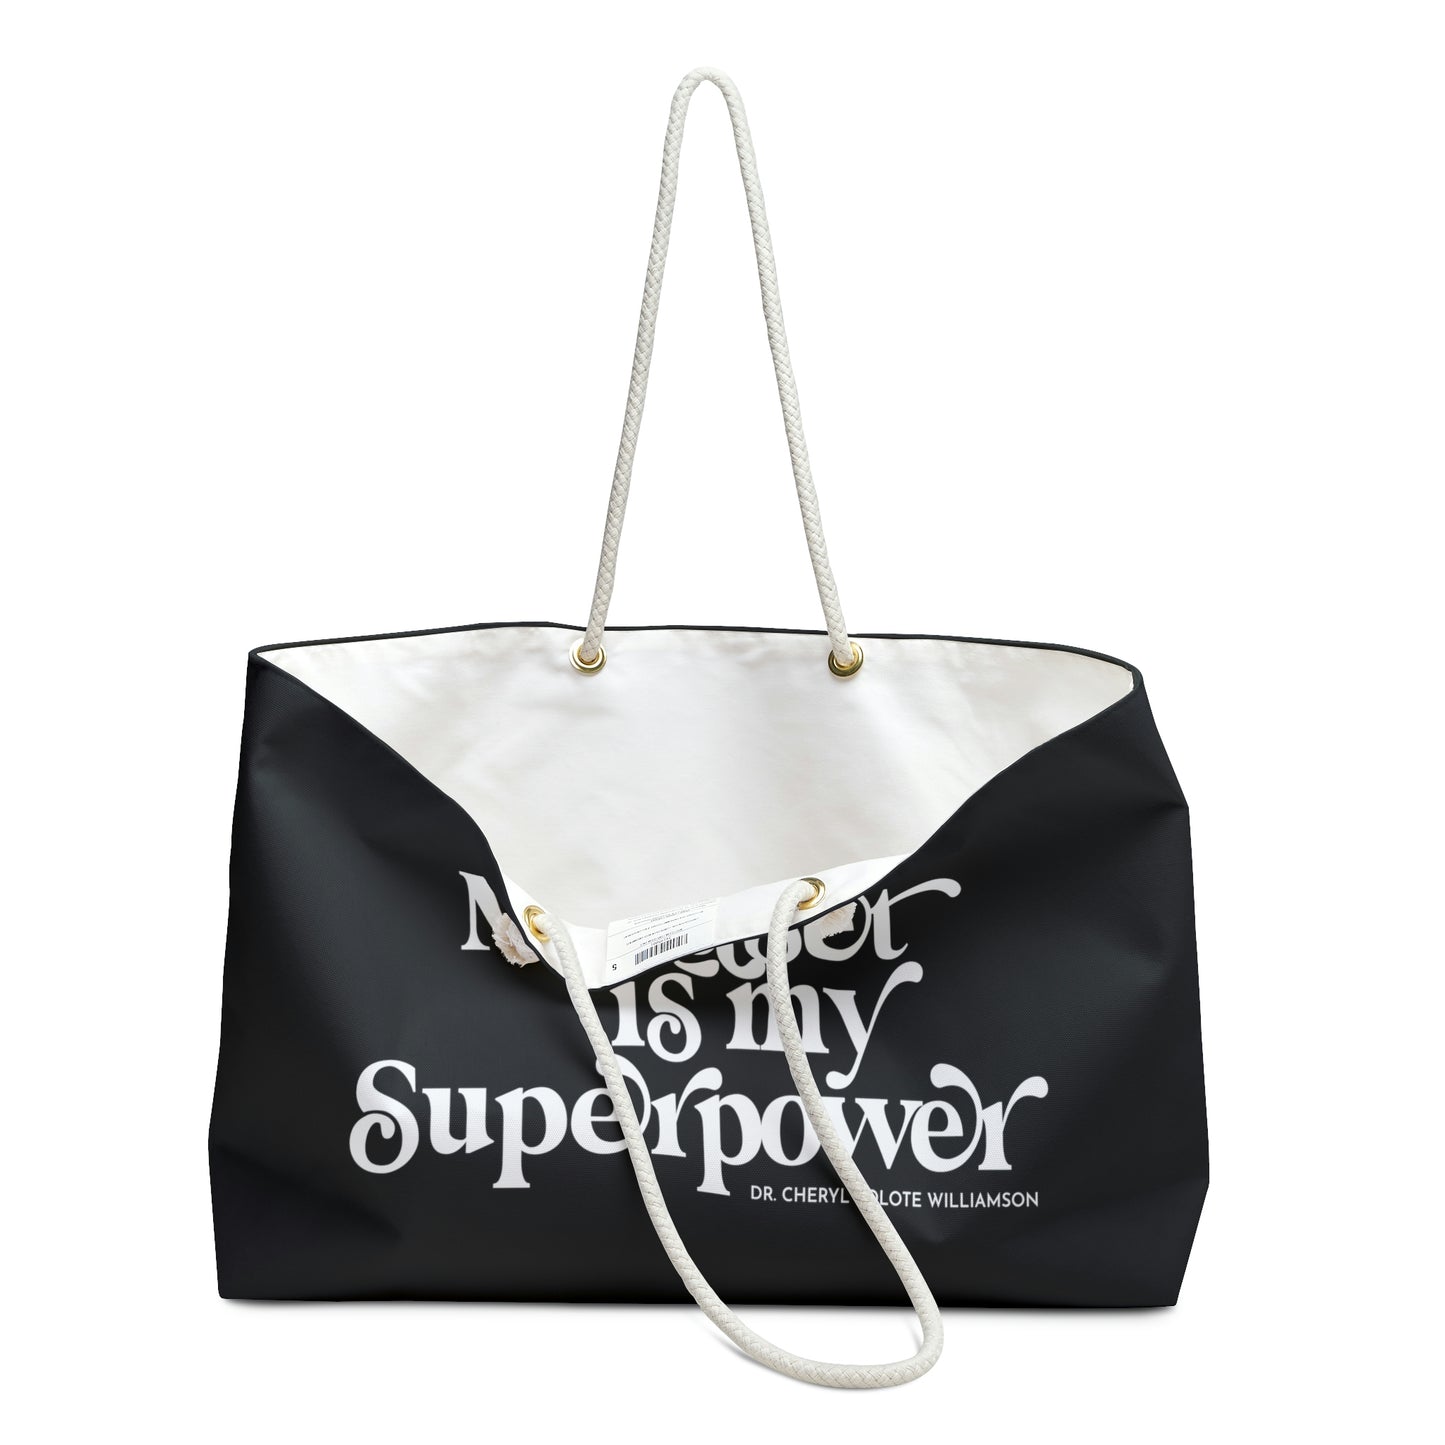 "My Mindset is My Superpower" Weekender Bag